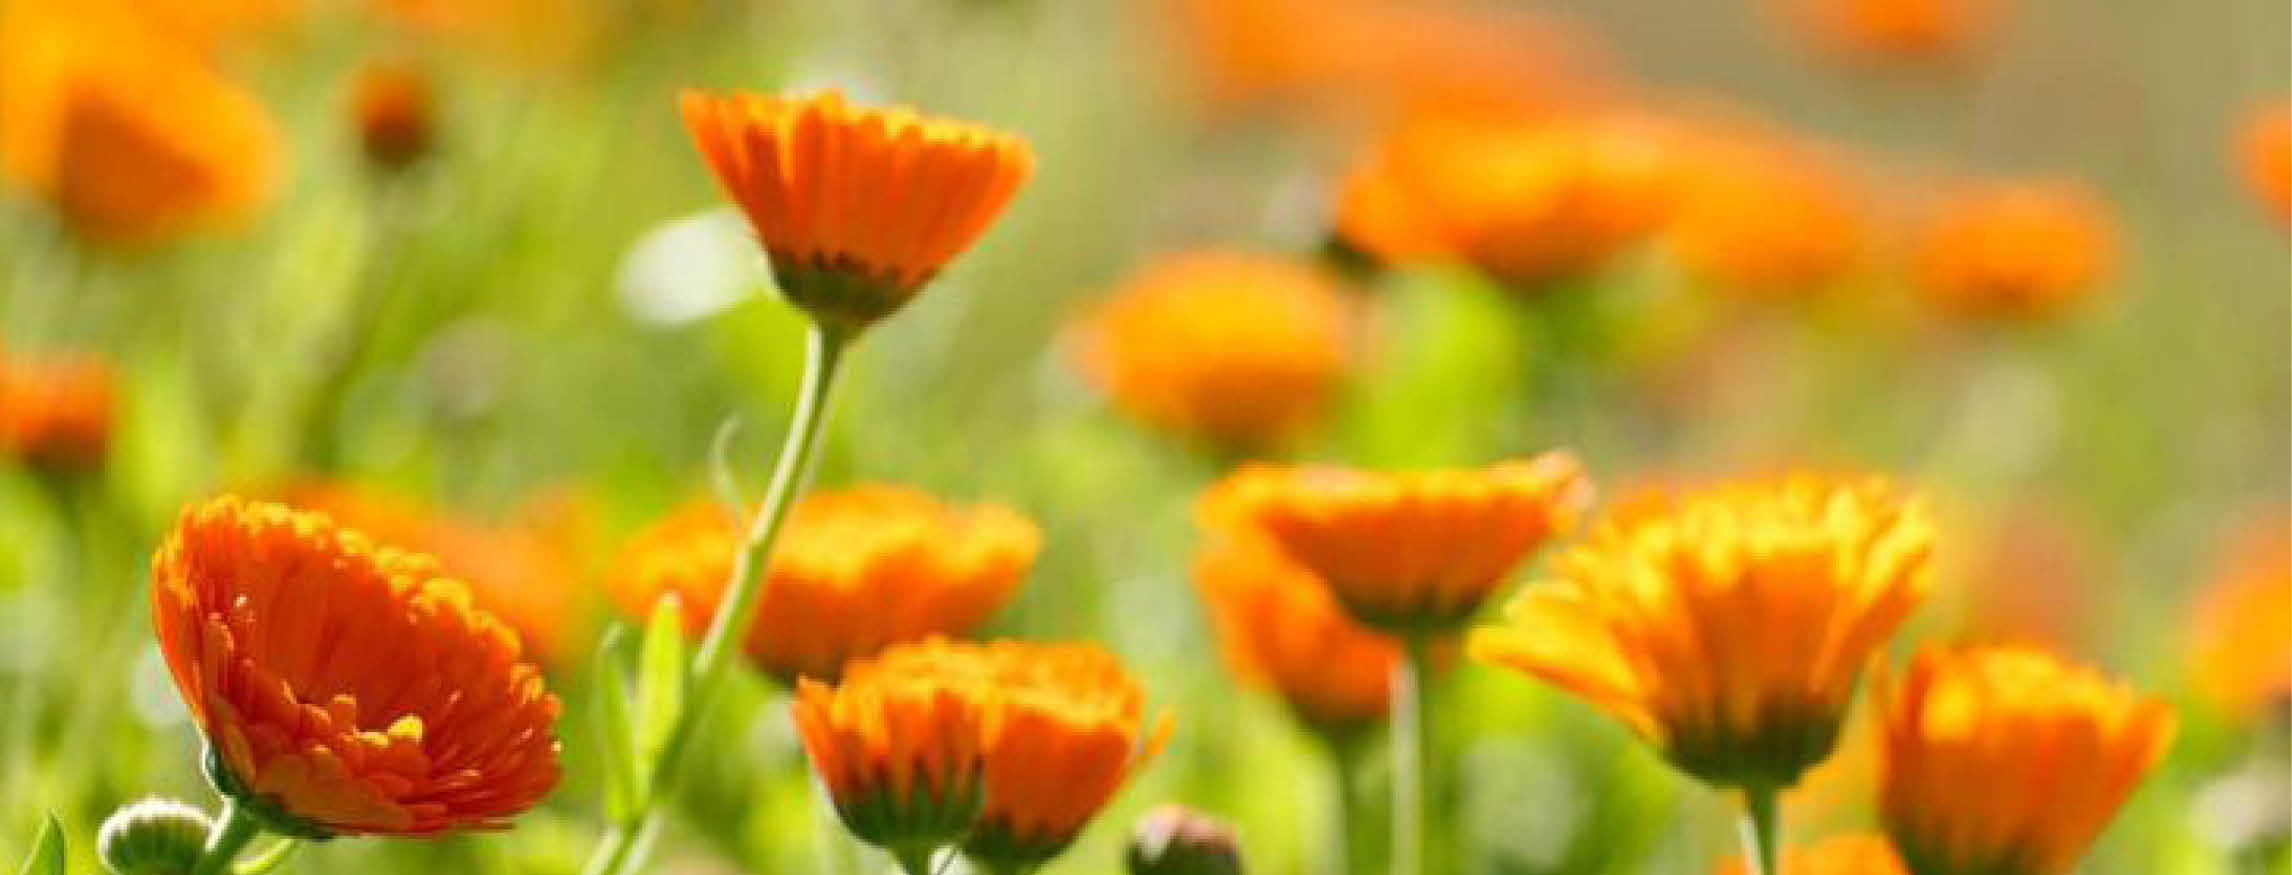 Calendula Marigold Plant with Orange Flowers